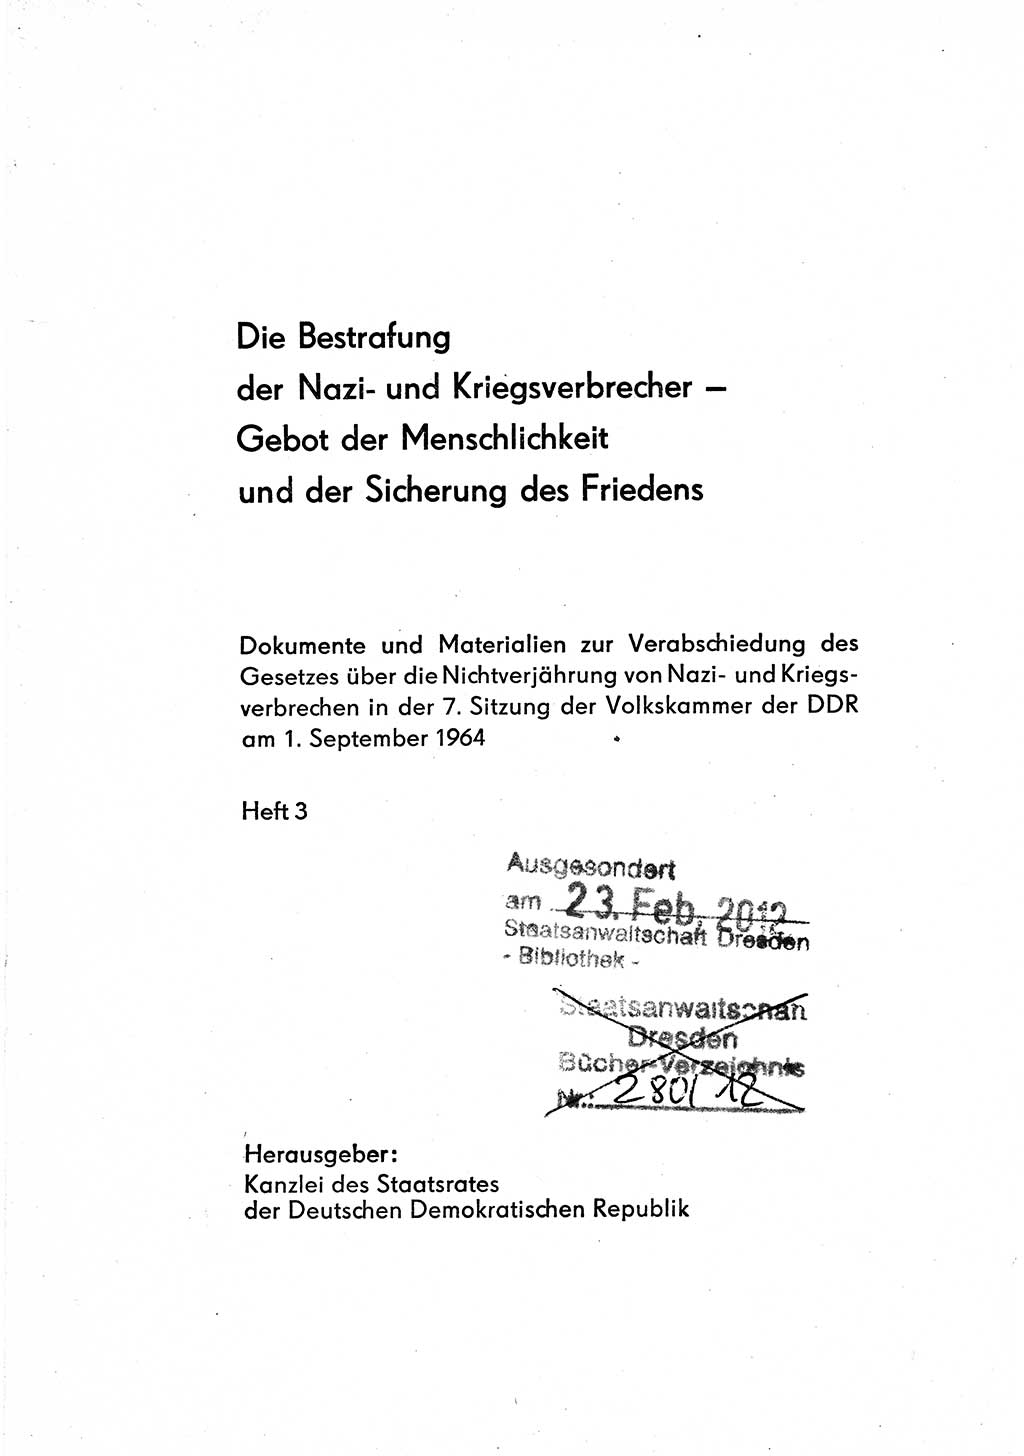 Bestrafung der Nazi- und Kriegsverbrecher [Deutsche Demokratische Republik (DDR)] 1964, Seite 1 (Bestr. Nazi-Kr.-Verbr. DDR 1964, S. 1)